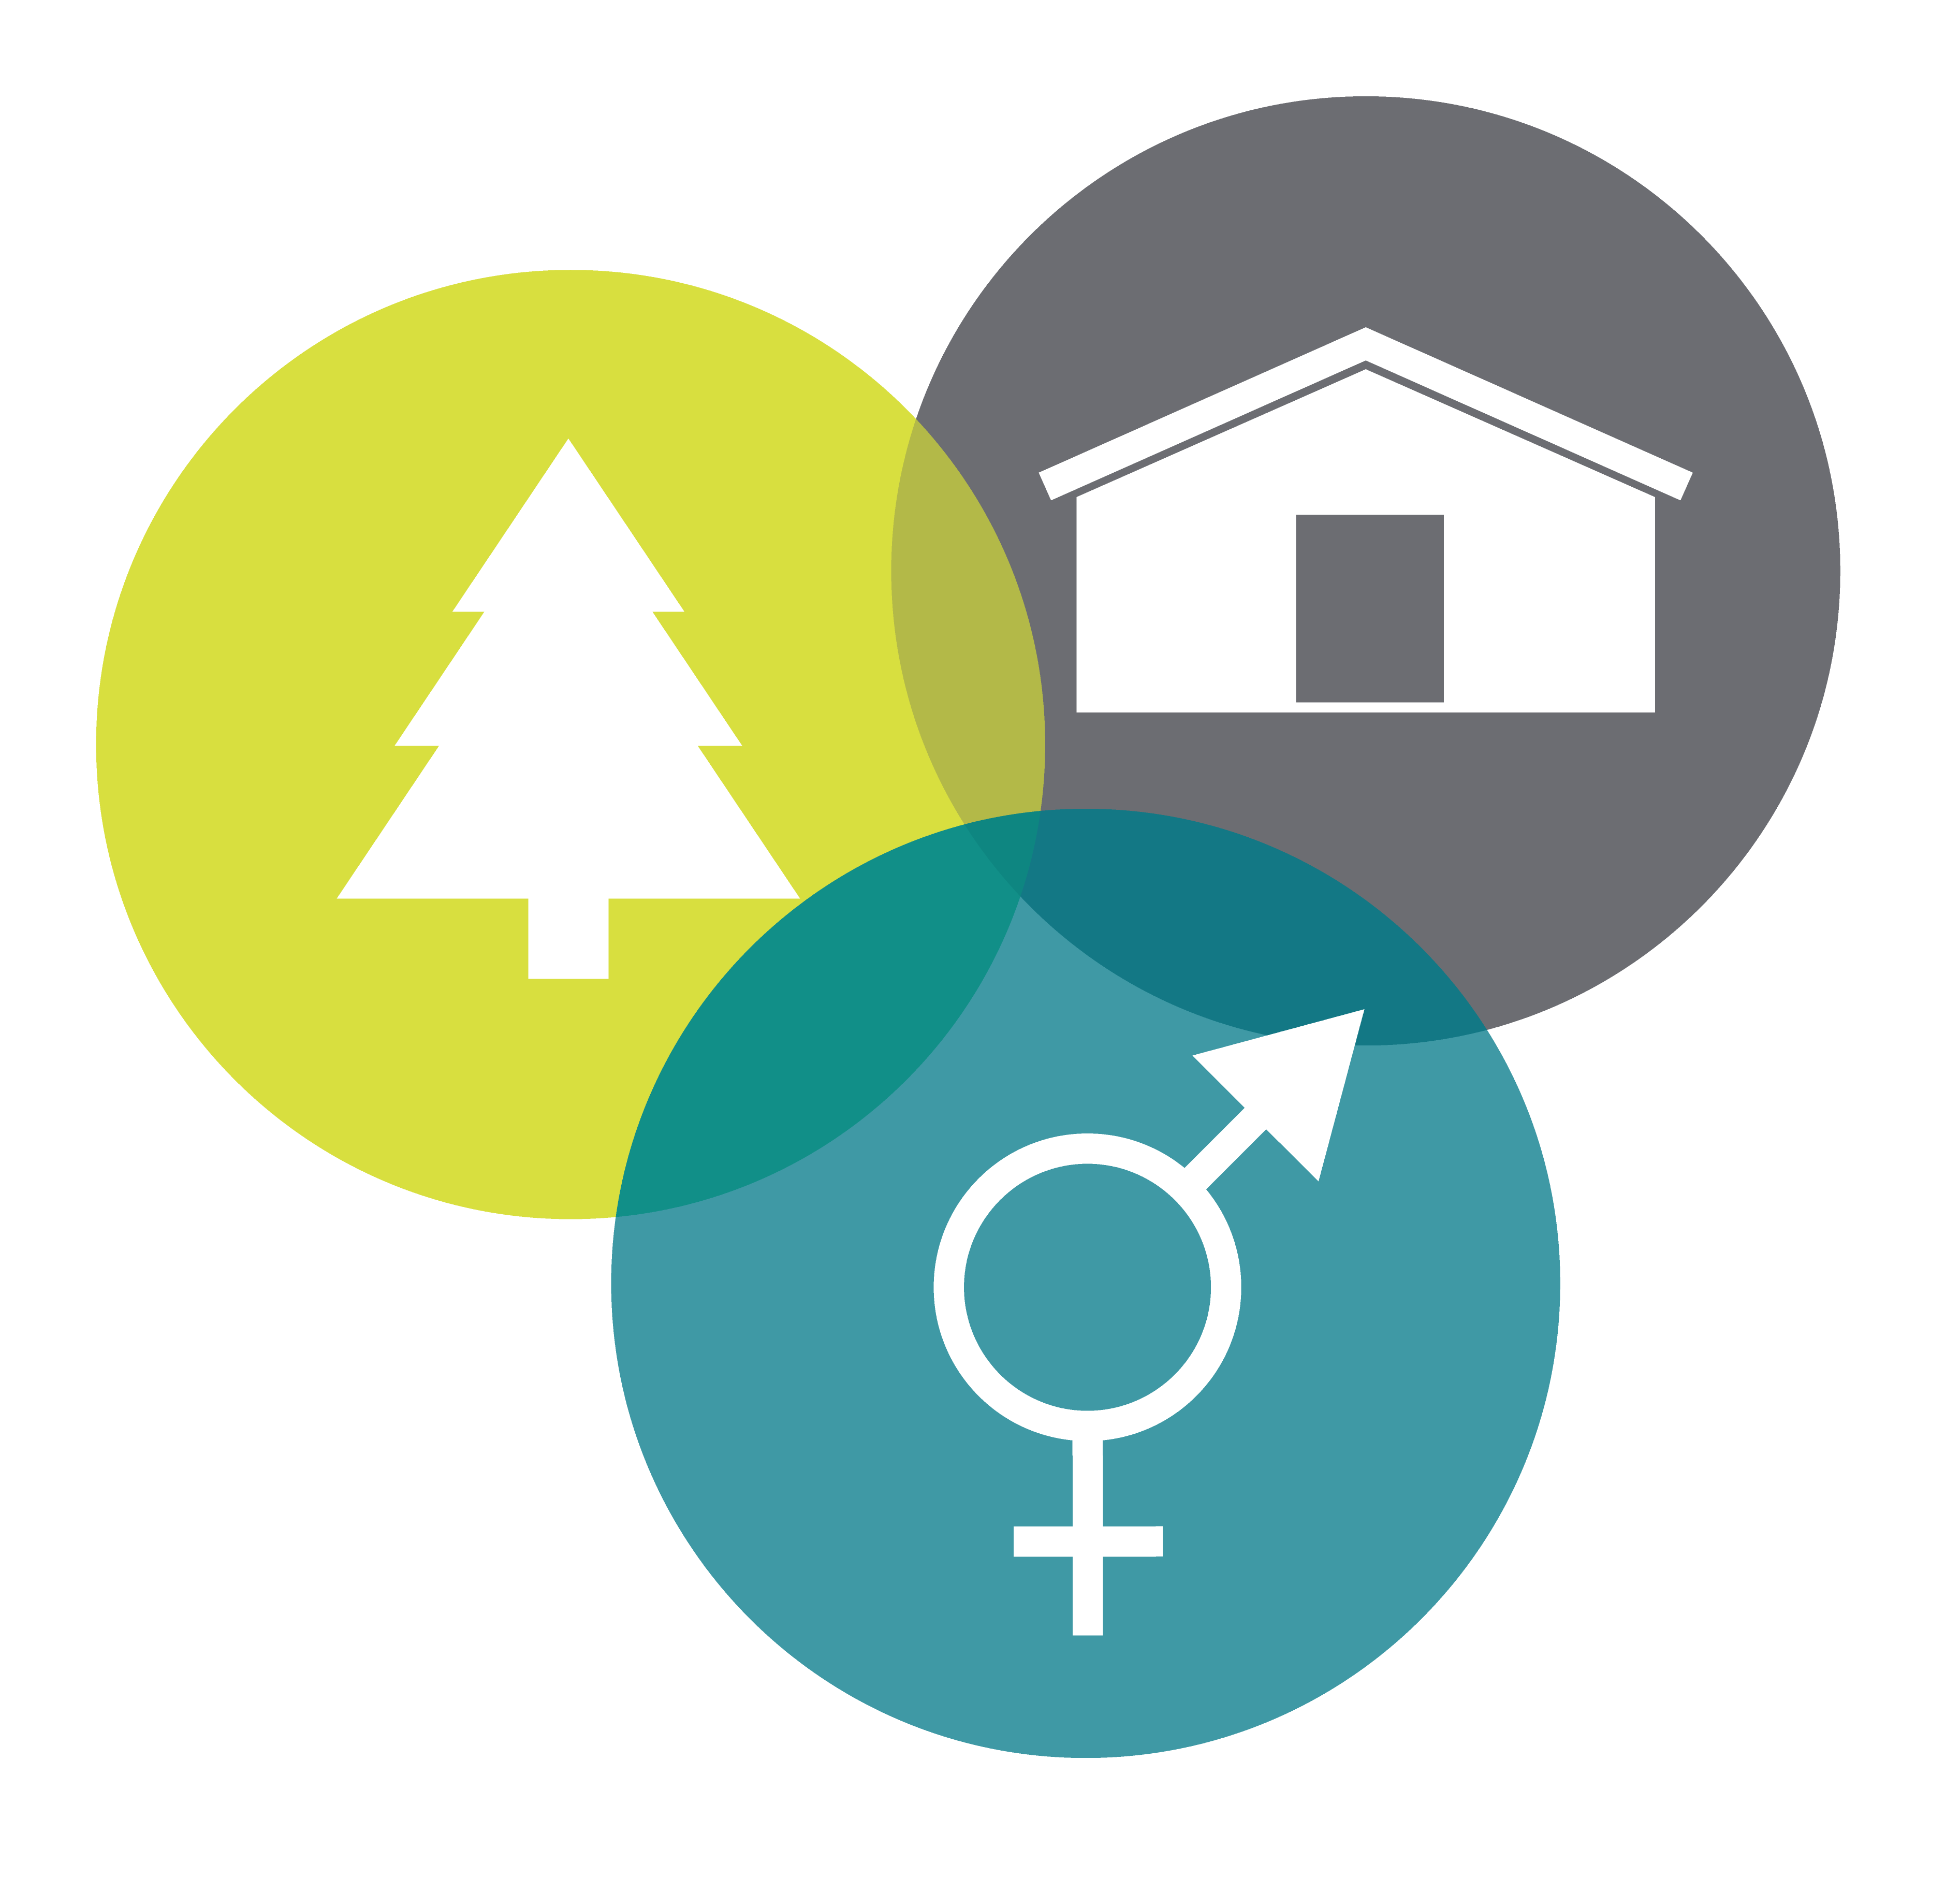 Logotyp bestående av tre cirklar med symbolerna för gran, stuga och jämställdhet